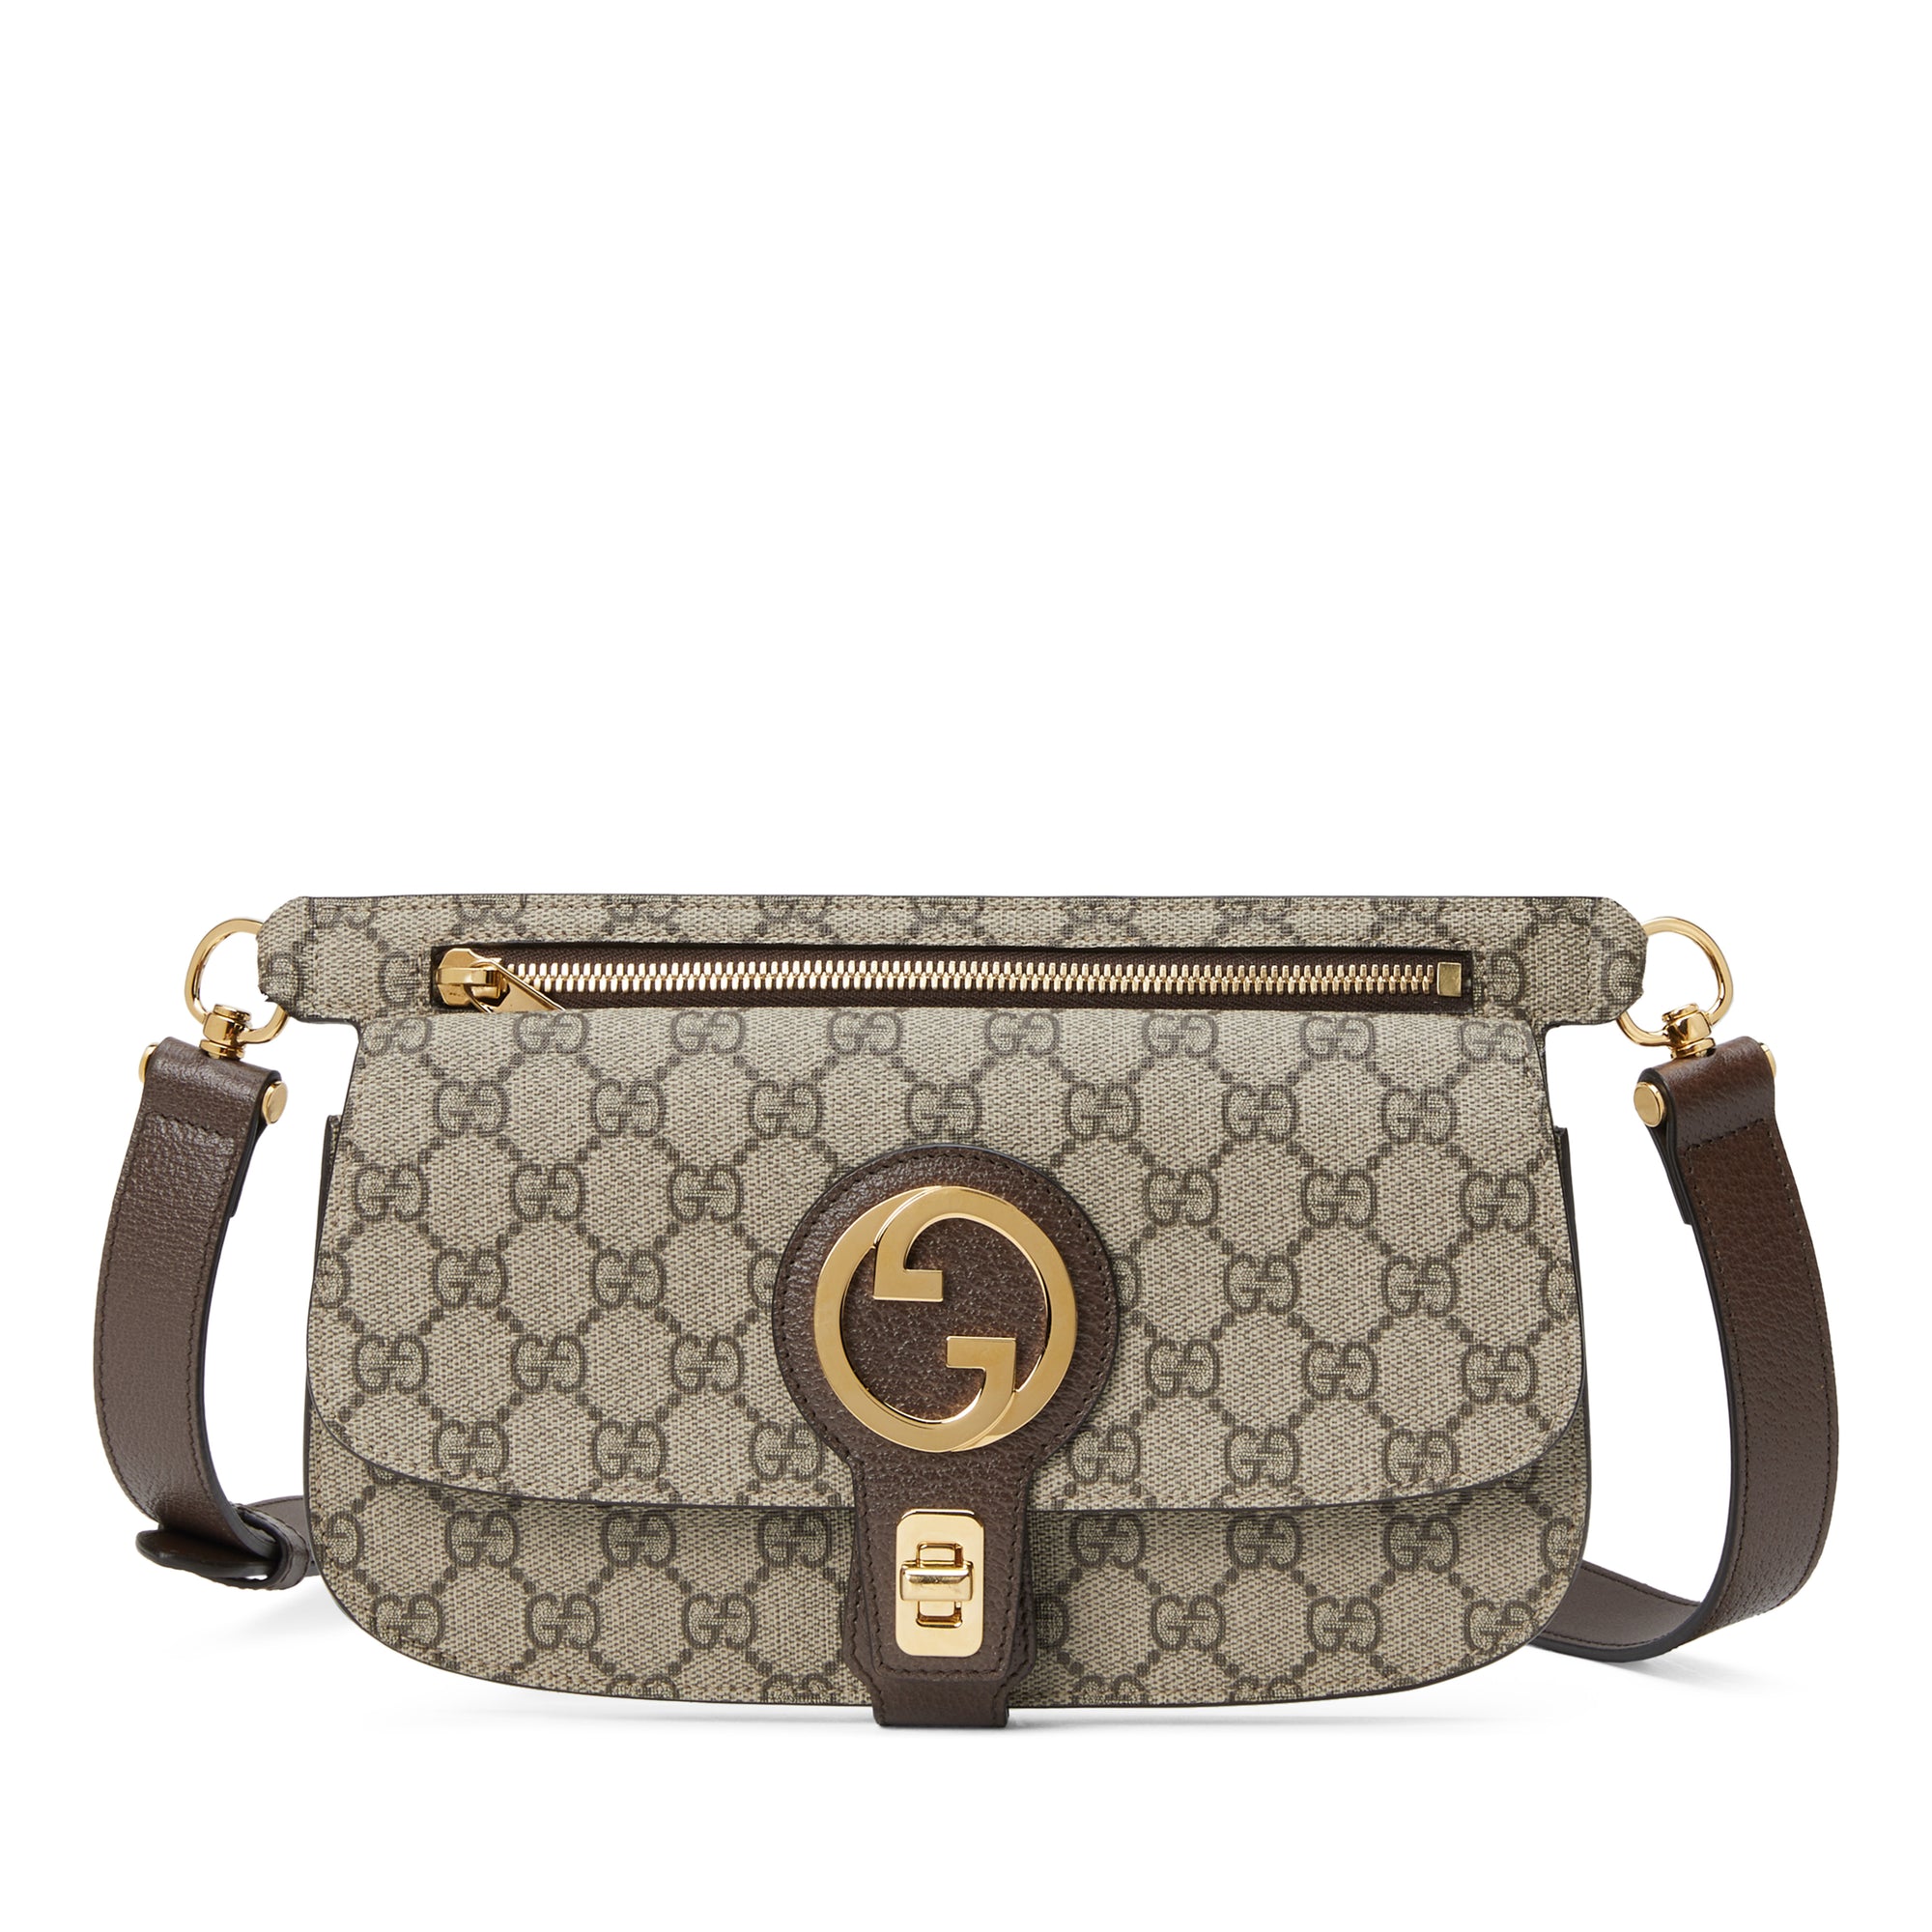 Gucci - Women’s Blondie Belt Bag - (Beige/Ebony) view 1